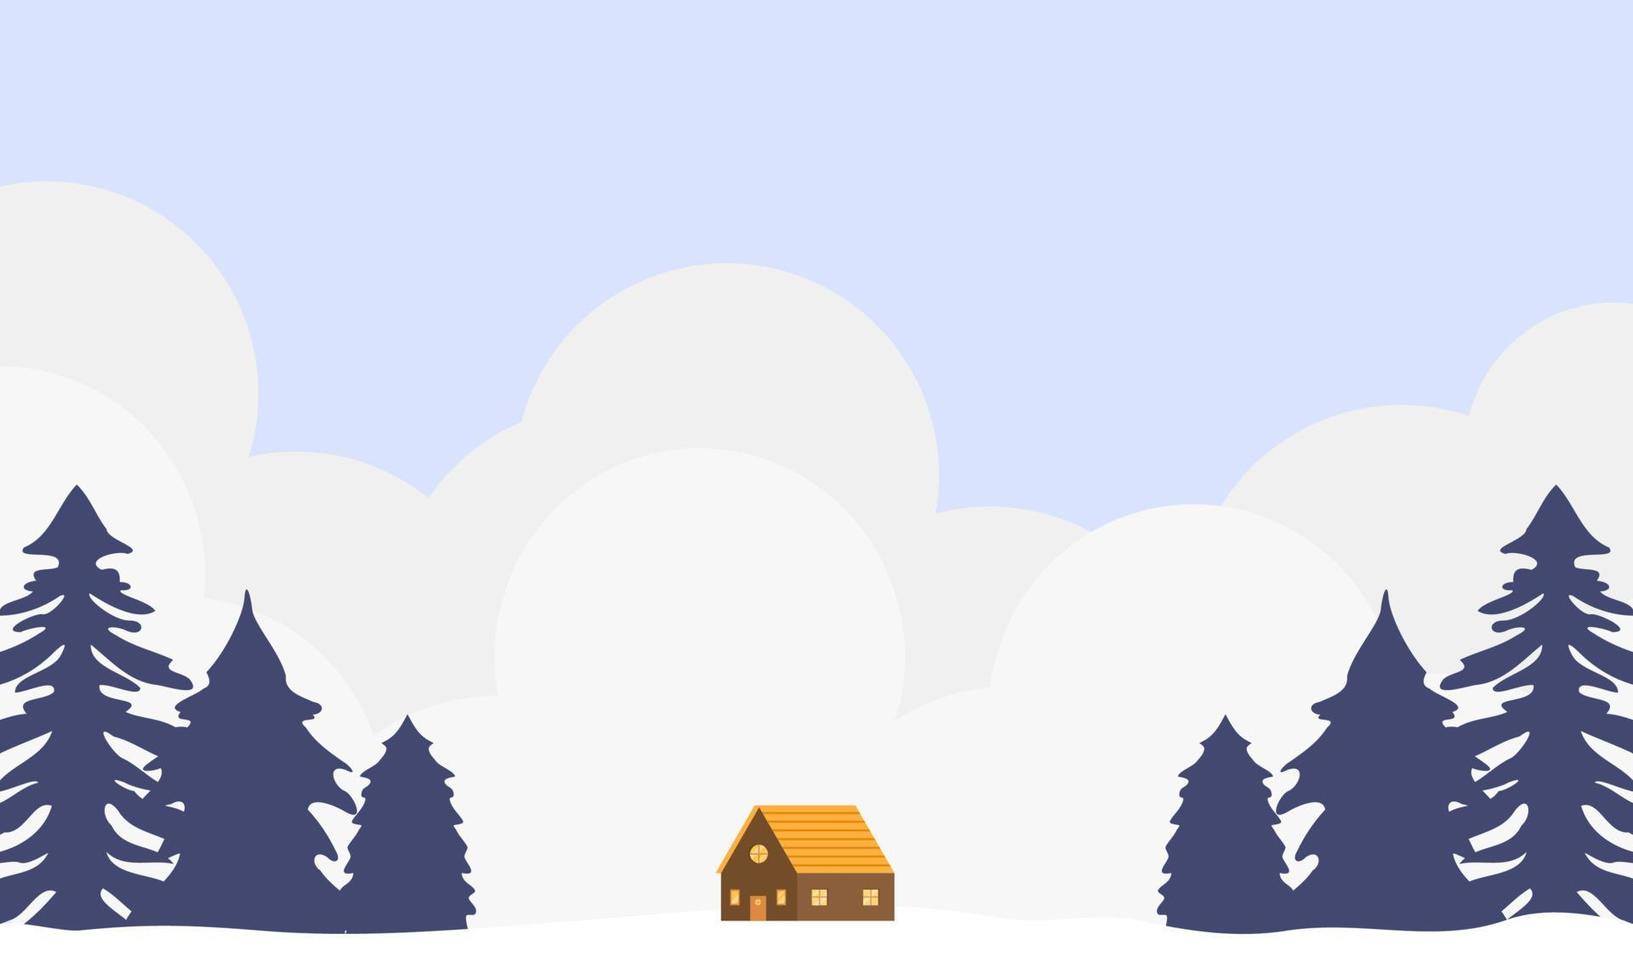 ilustração de paisagem de inverno com pinheiros, nuvens e casa. papel de parede de inverno com design de estilo simples. ilustração de inverno com estilo cartoon. Olá inverno. vetor